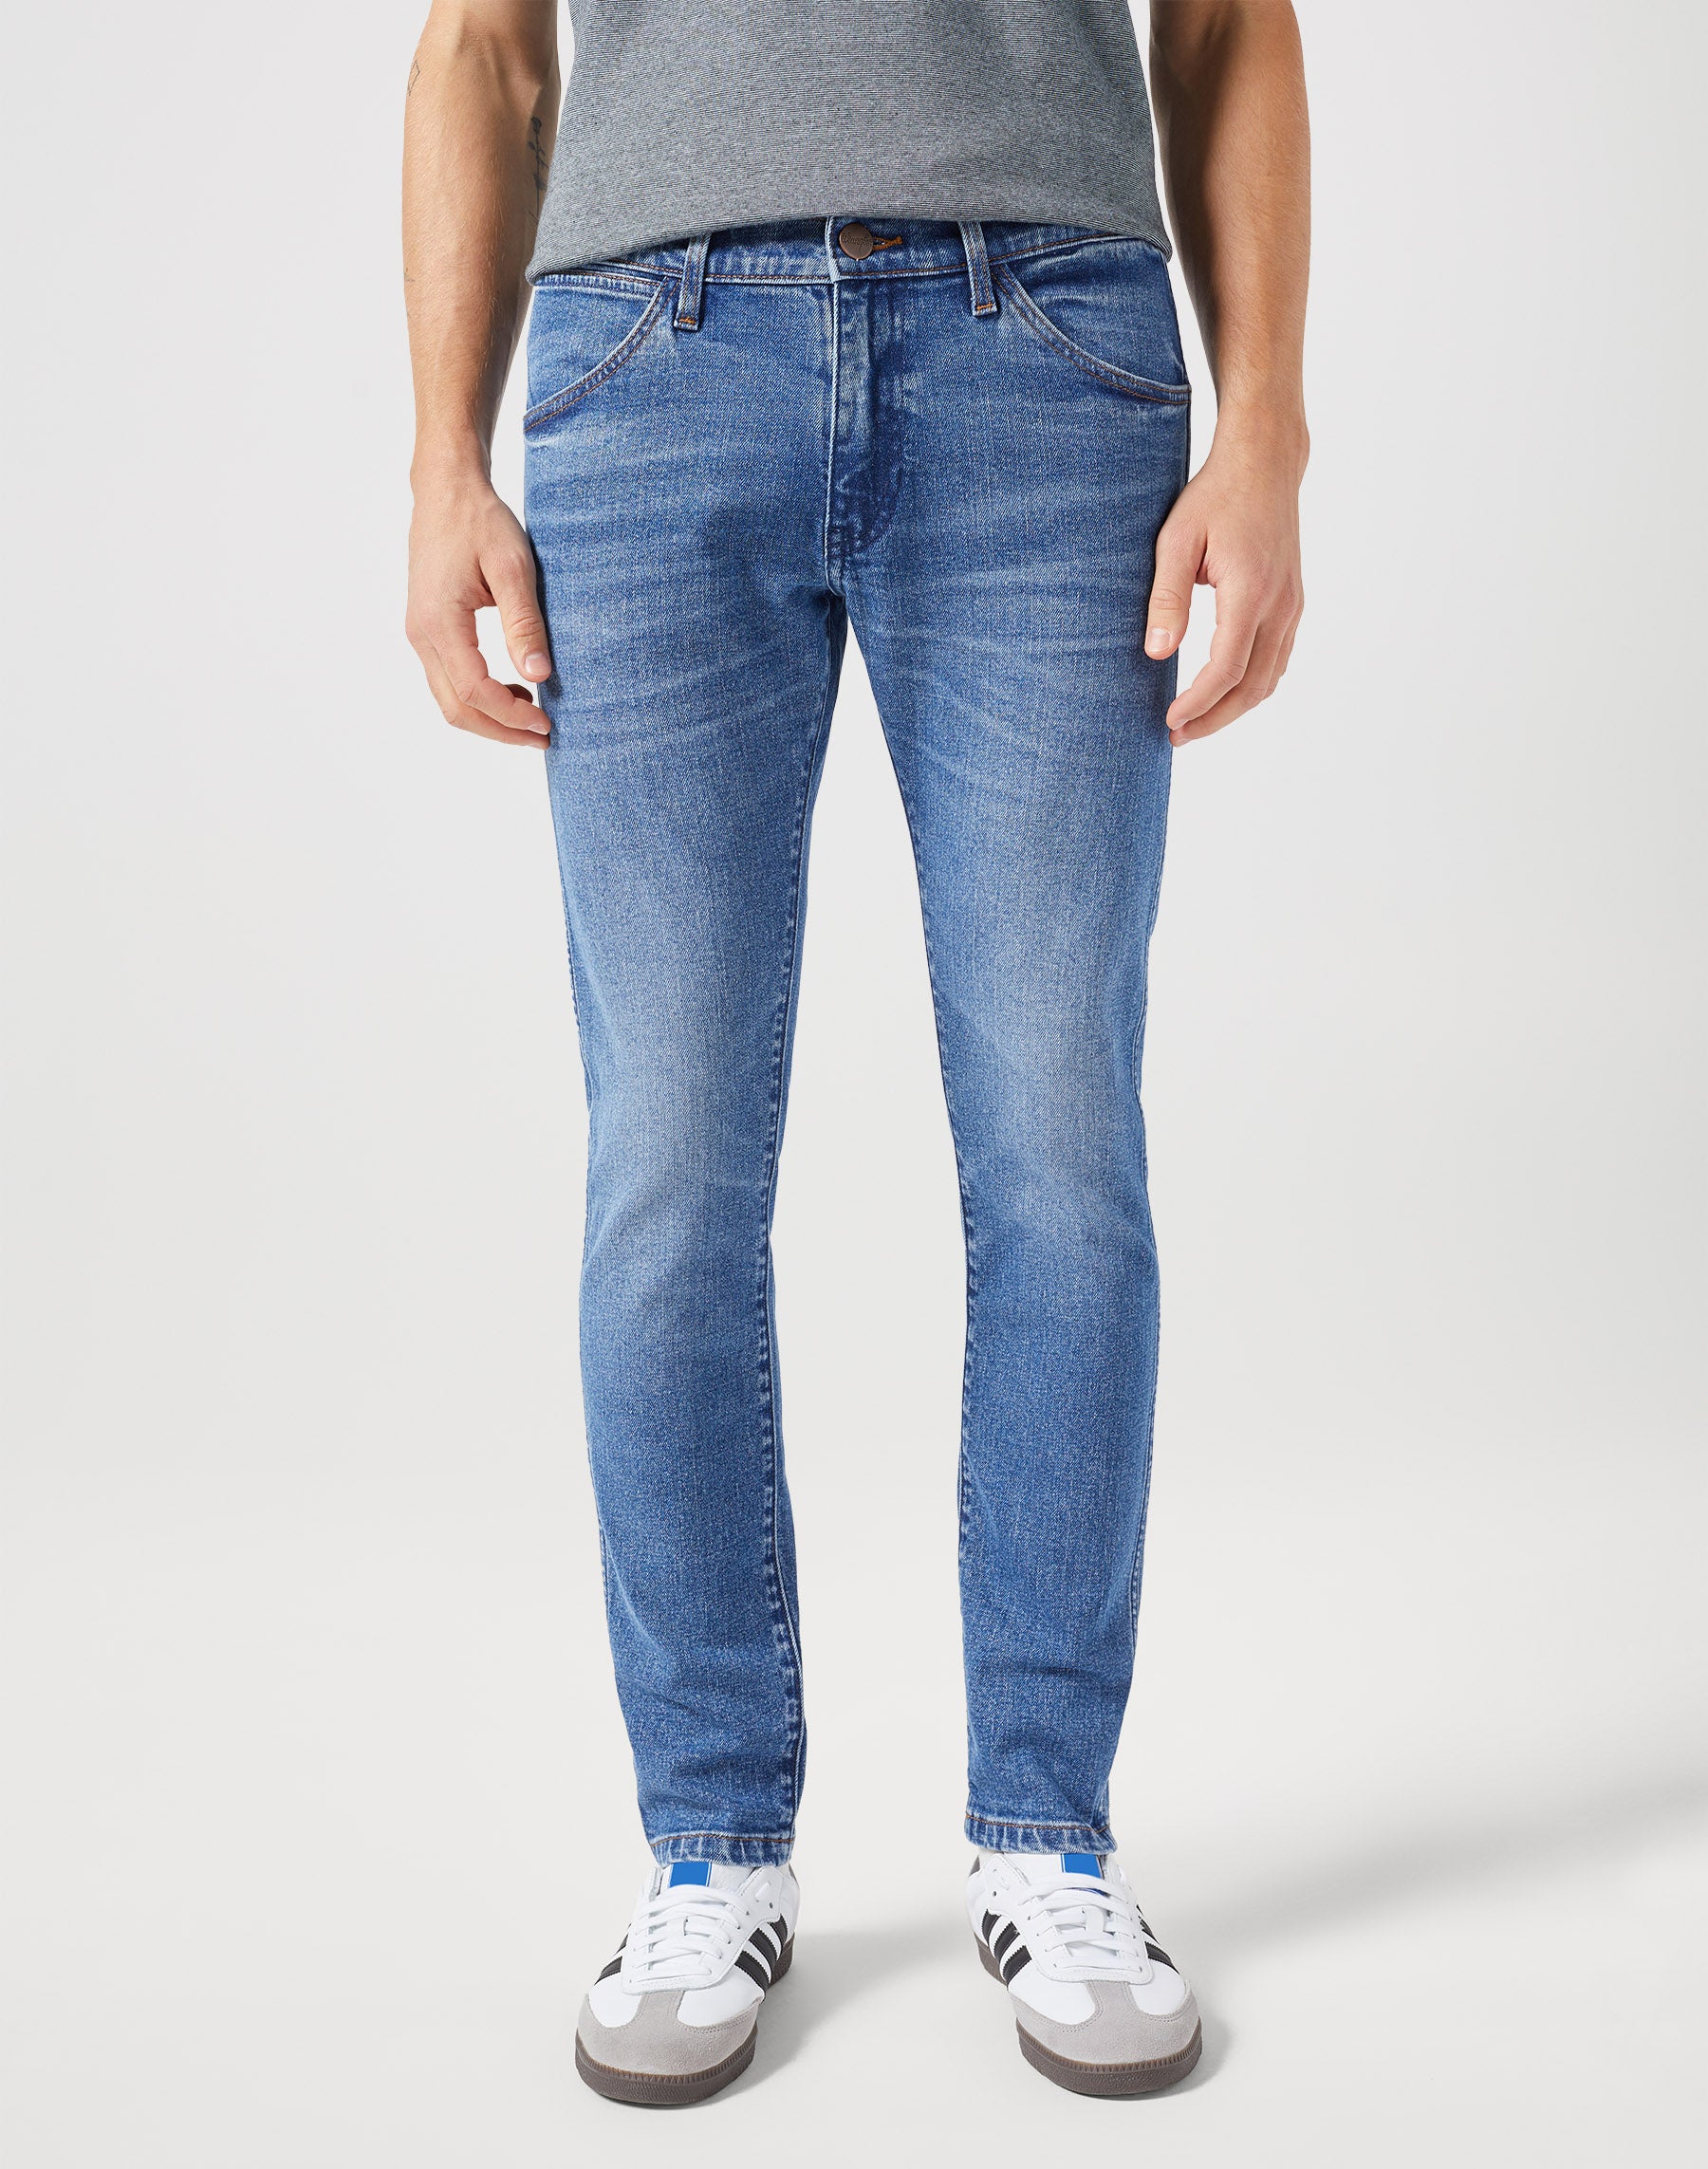 Bryson in Guardian Jeans Wrangler   